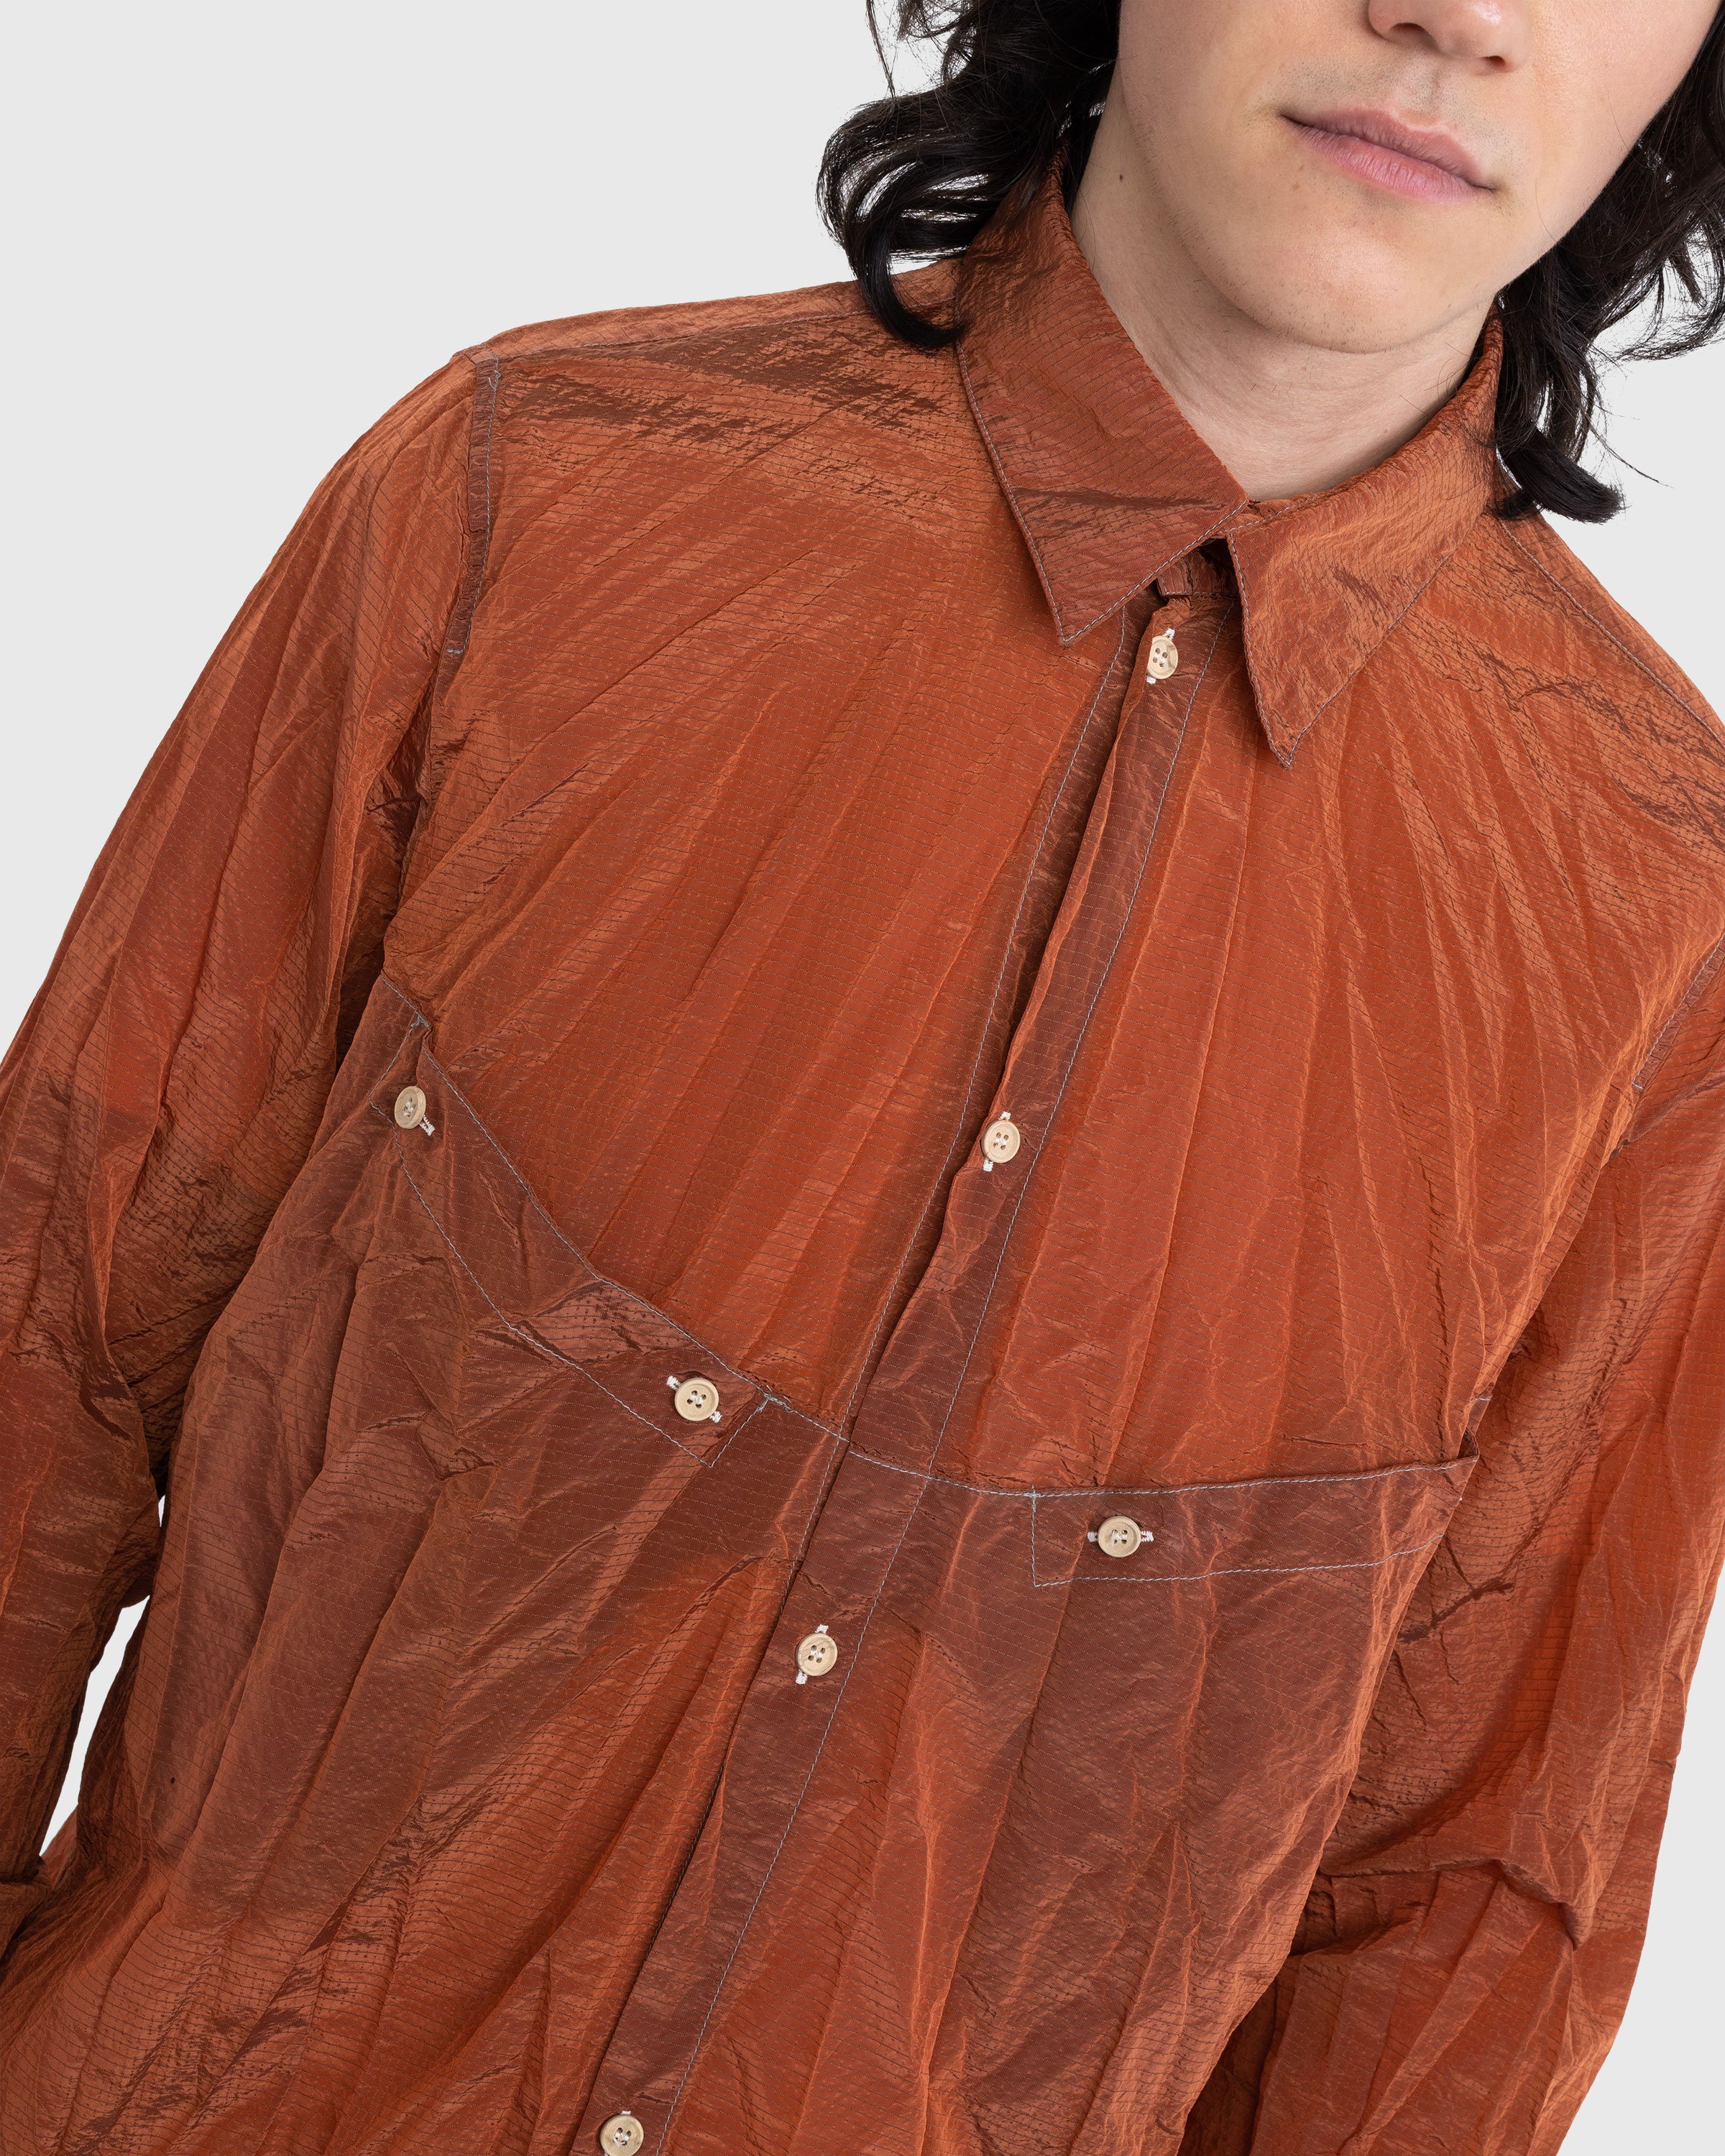 RANRA - Jor Shirt Jacket Pureed Plum - Clothing - Red - Image 3